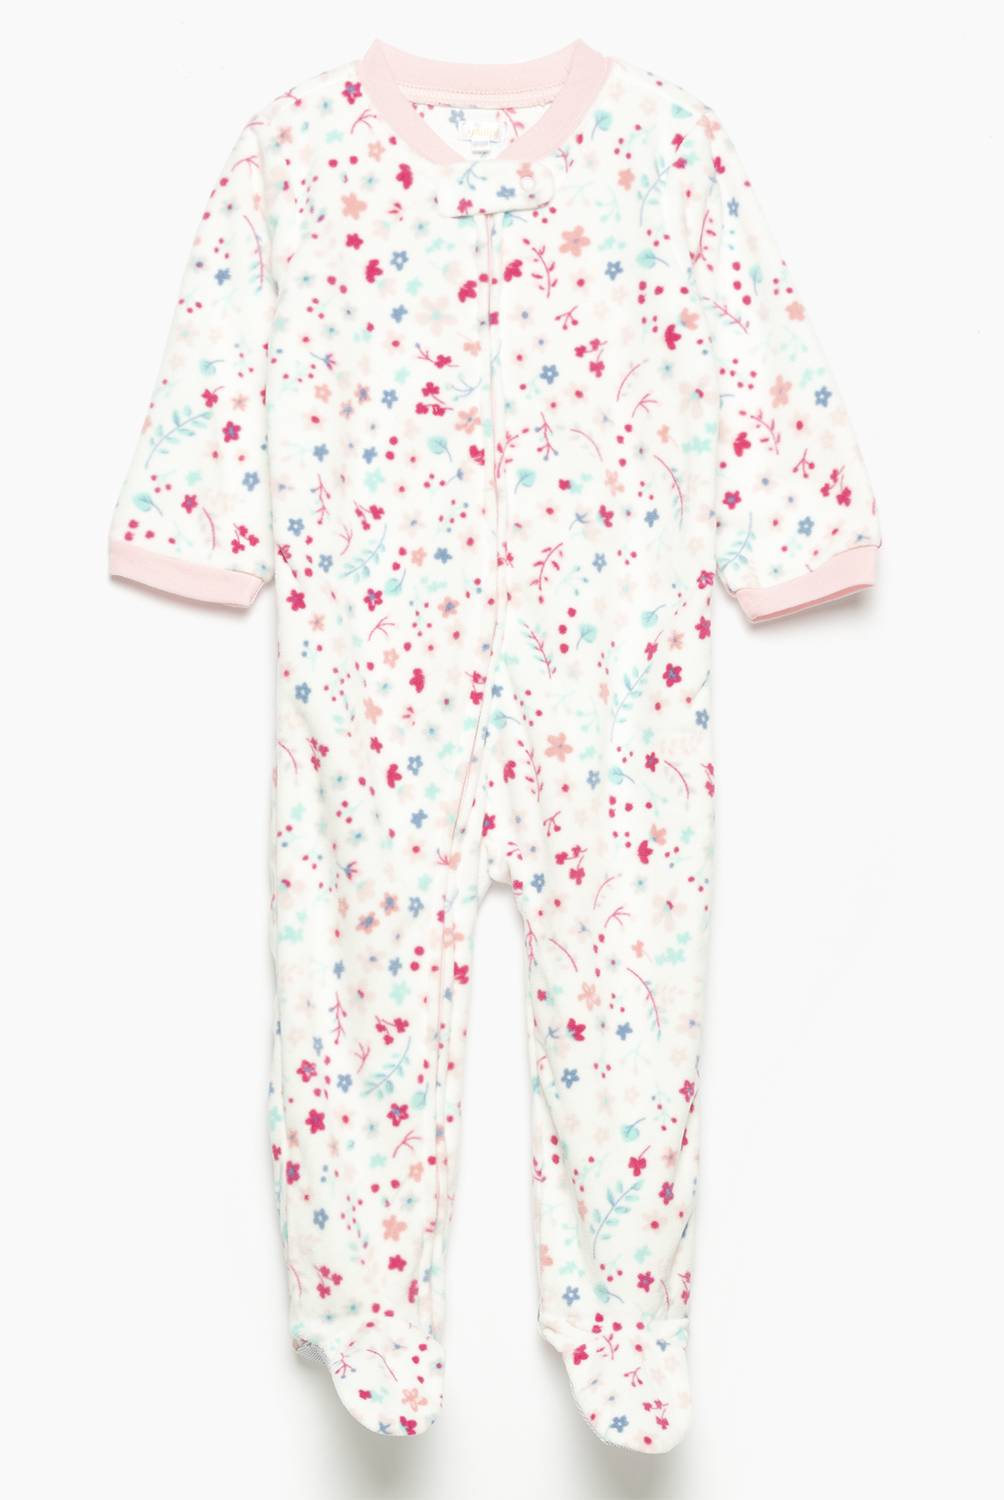 YAMP - Pijama Polar Bebé Niña